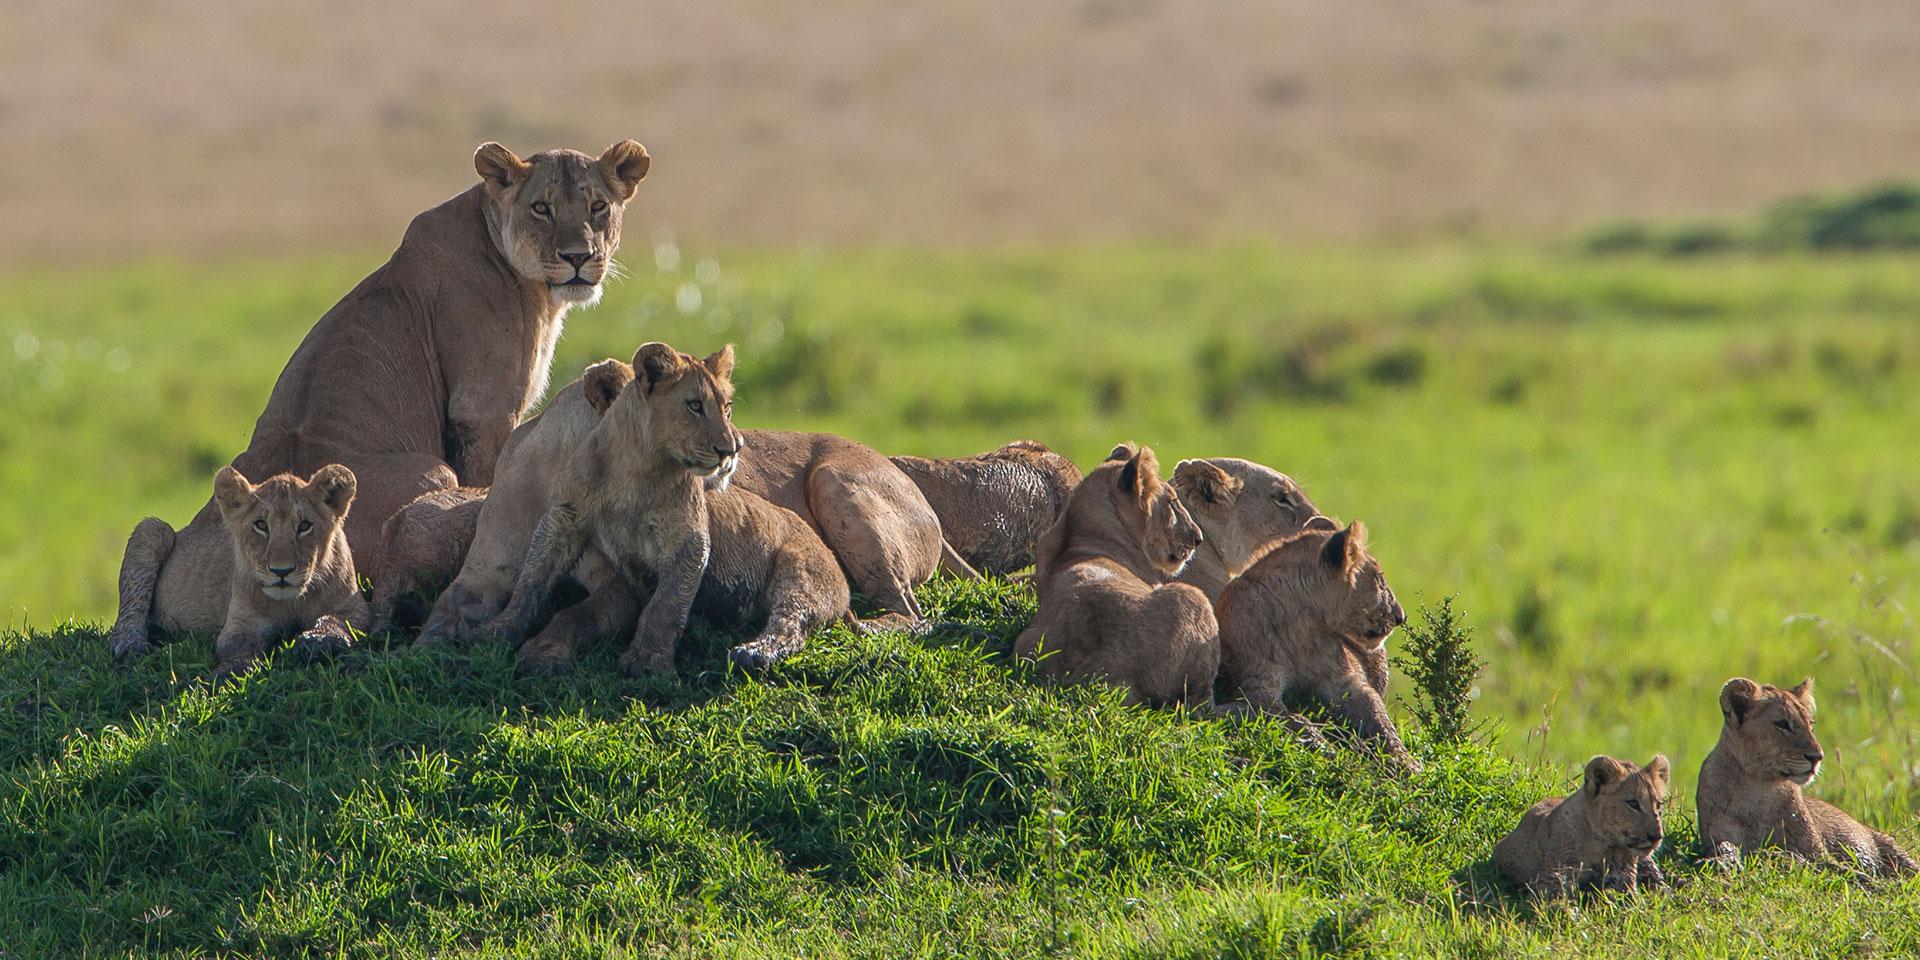 Kenya Safaris Packages- Book Safaris in Kenya Now